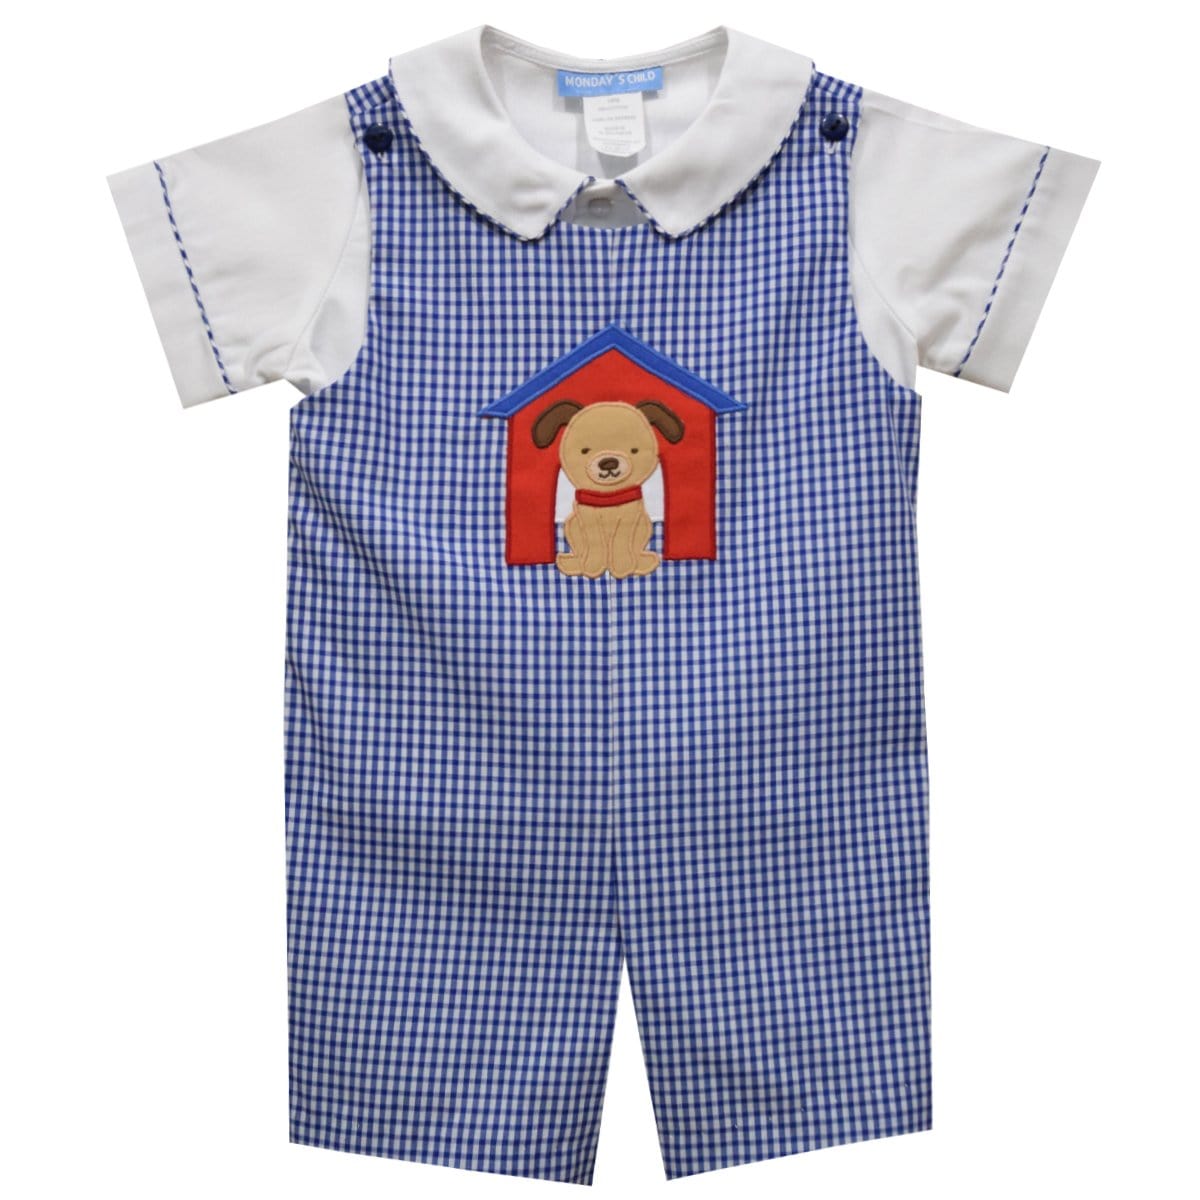 Vive La Fete Vive La Fete Puppies Applique Royal Check Shortall and Short Sleeve Shirt - Little Miss Muffin Children & Home